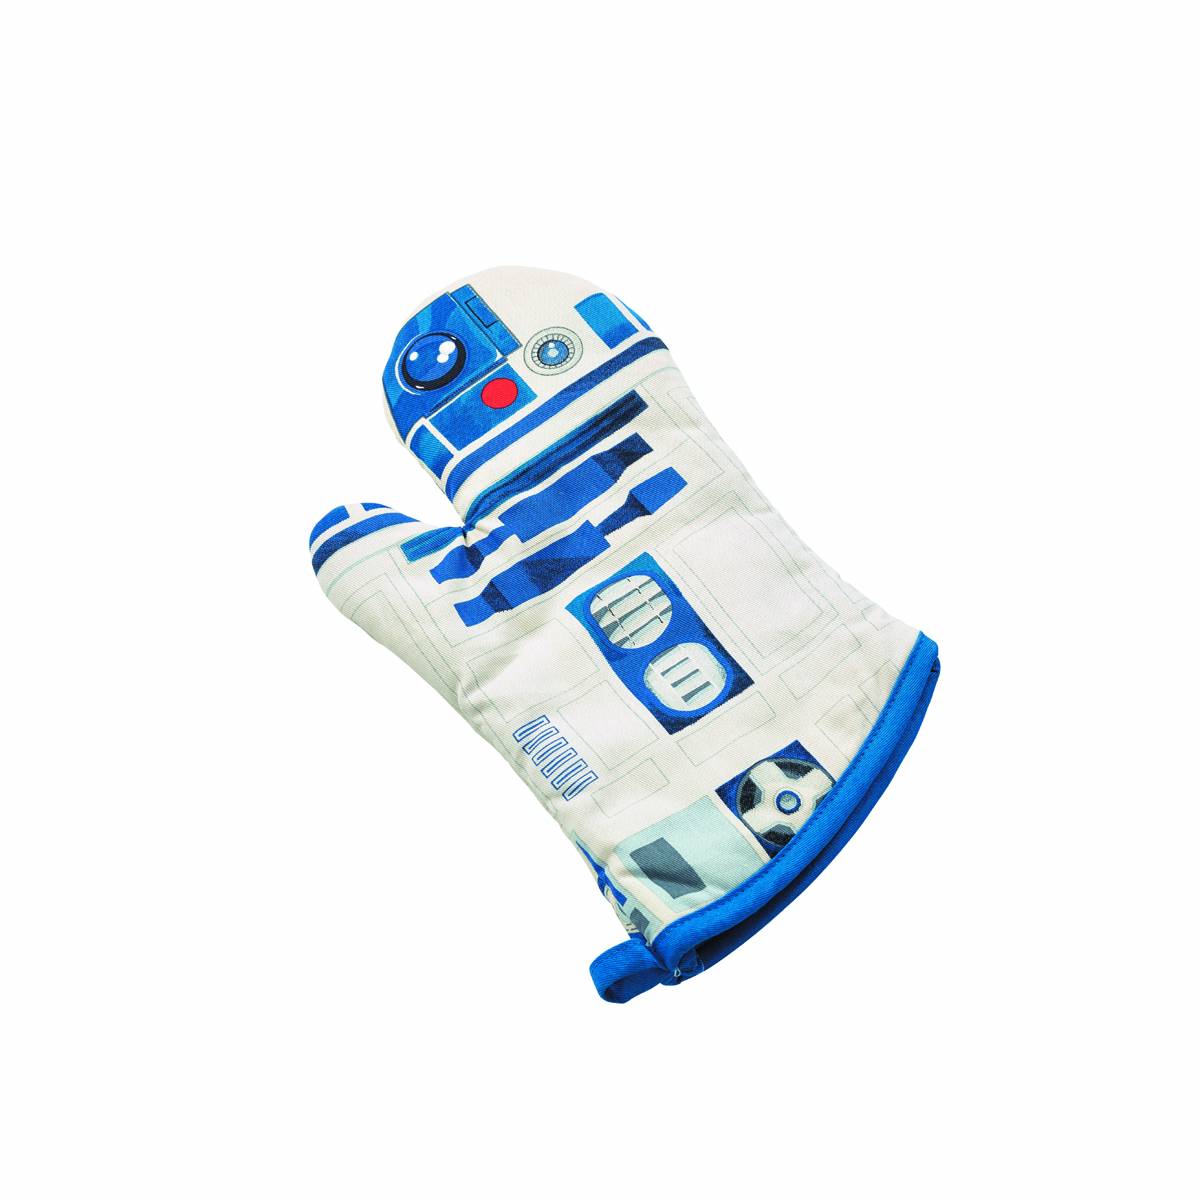 R2-D2 Oven Mitt